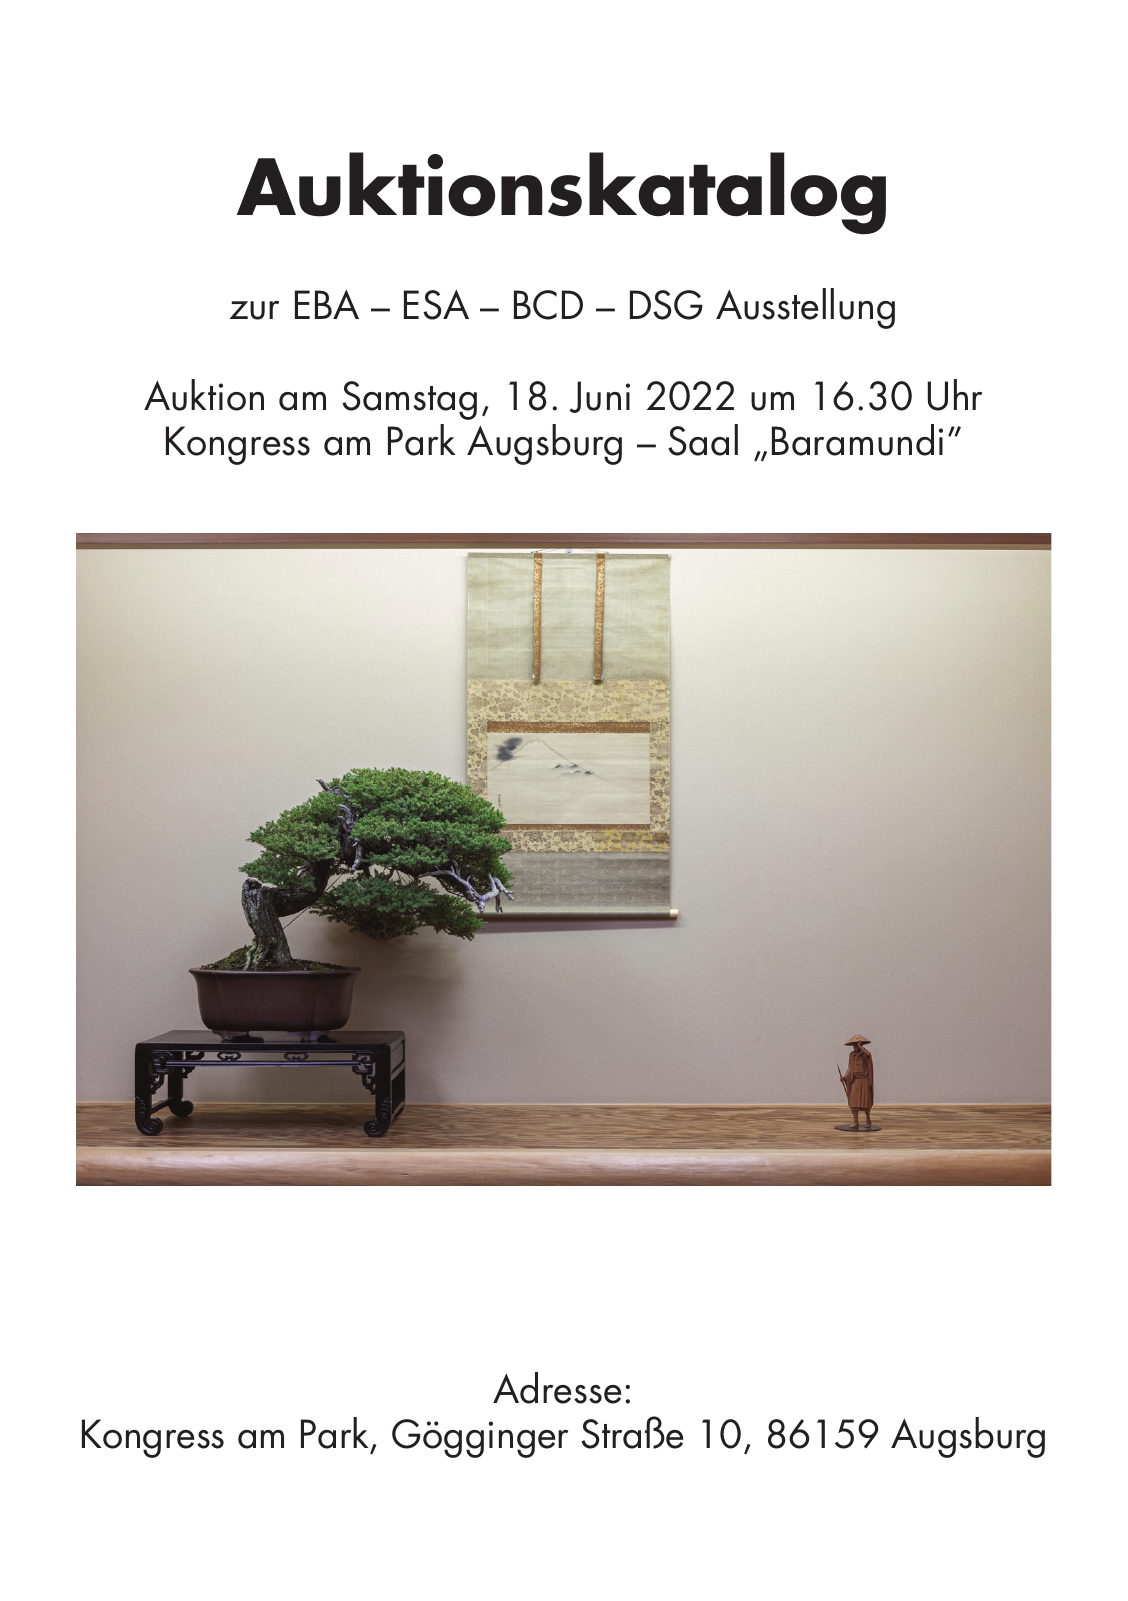 Vorschau Auktionskatalog Augsburg 2022 Seite 1